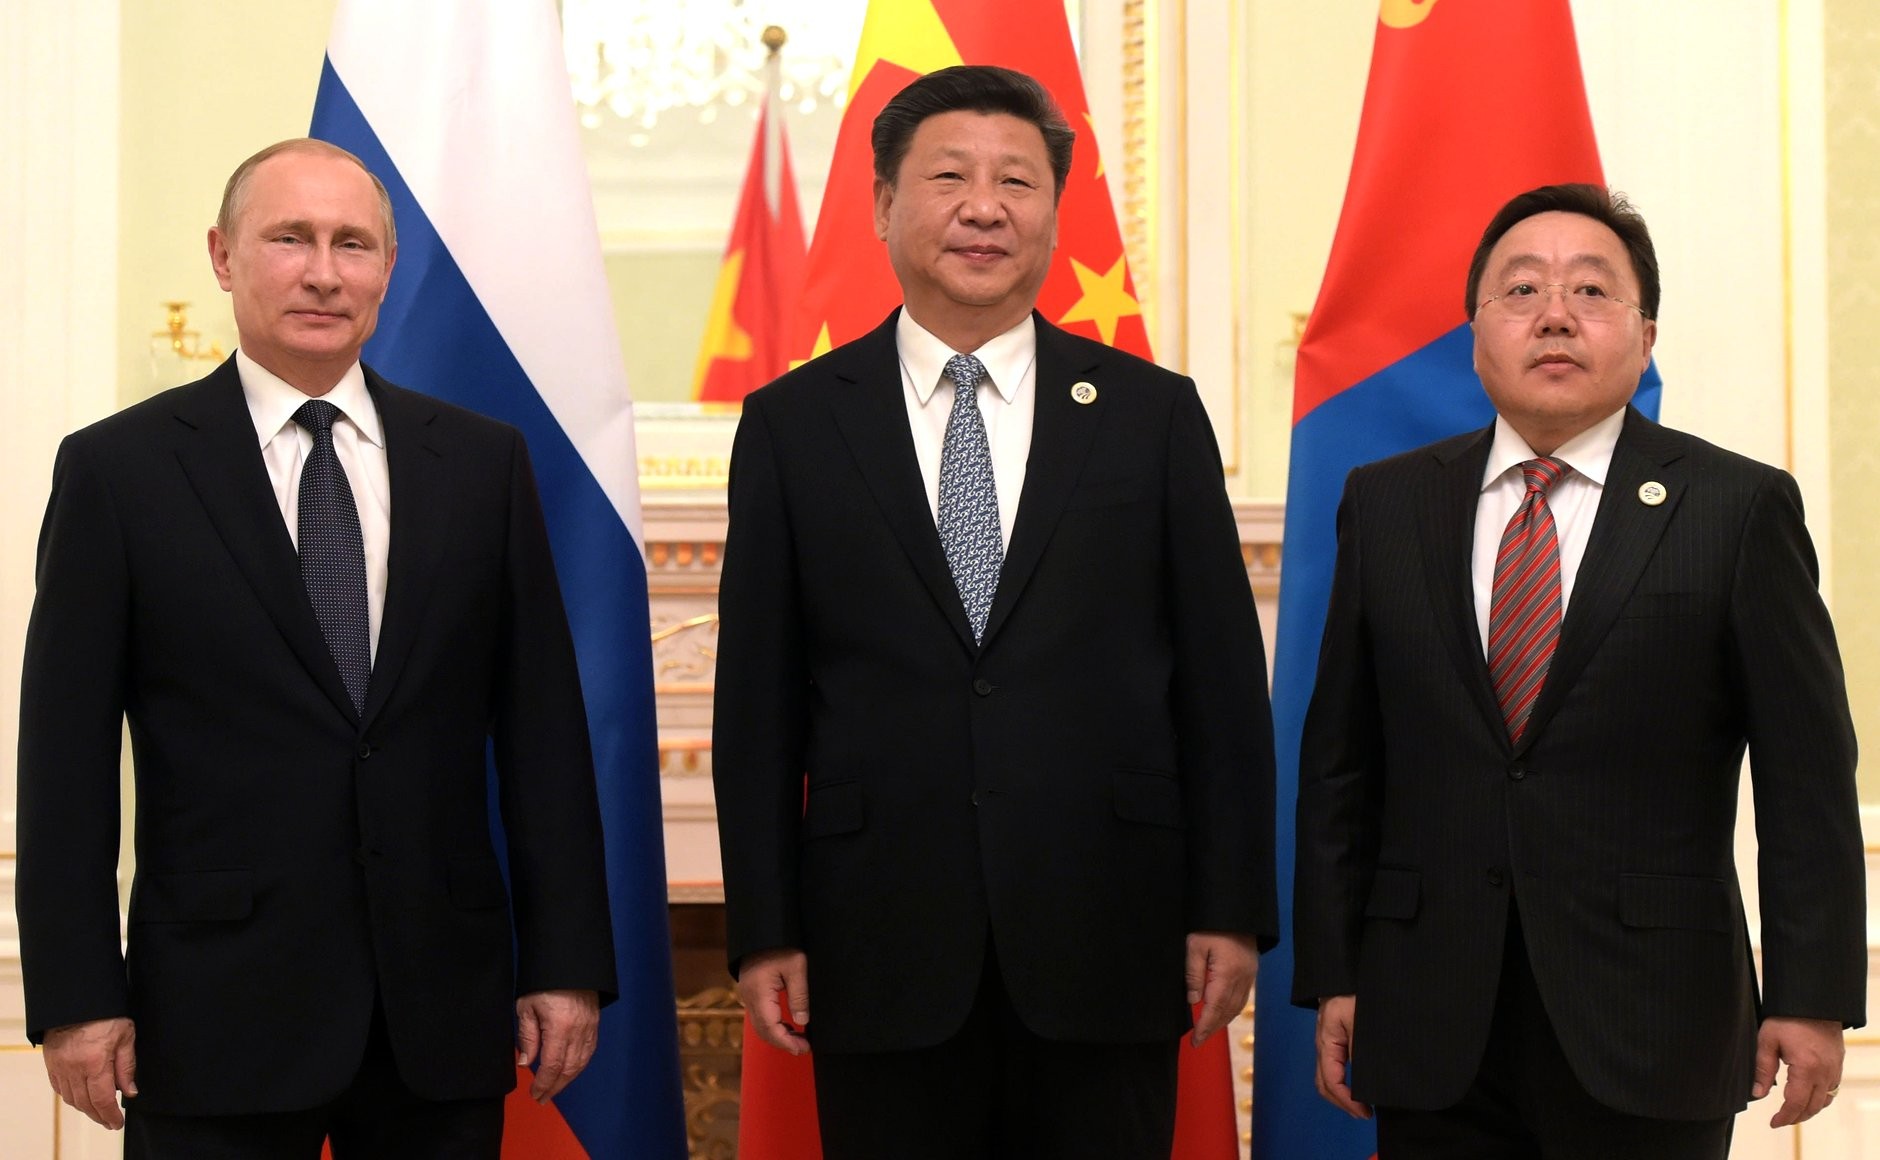 Tsakhiagiin Elbegdorj Vladimir Putin Xi Jingping